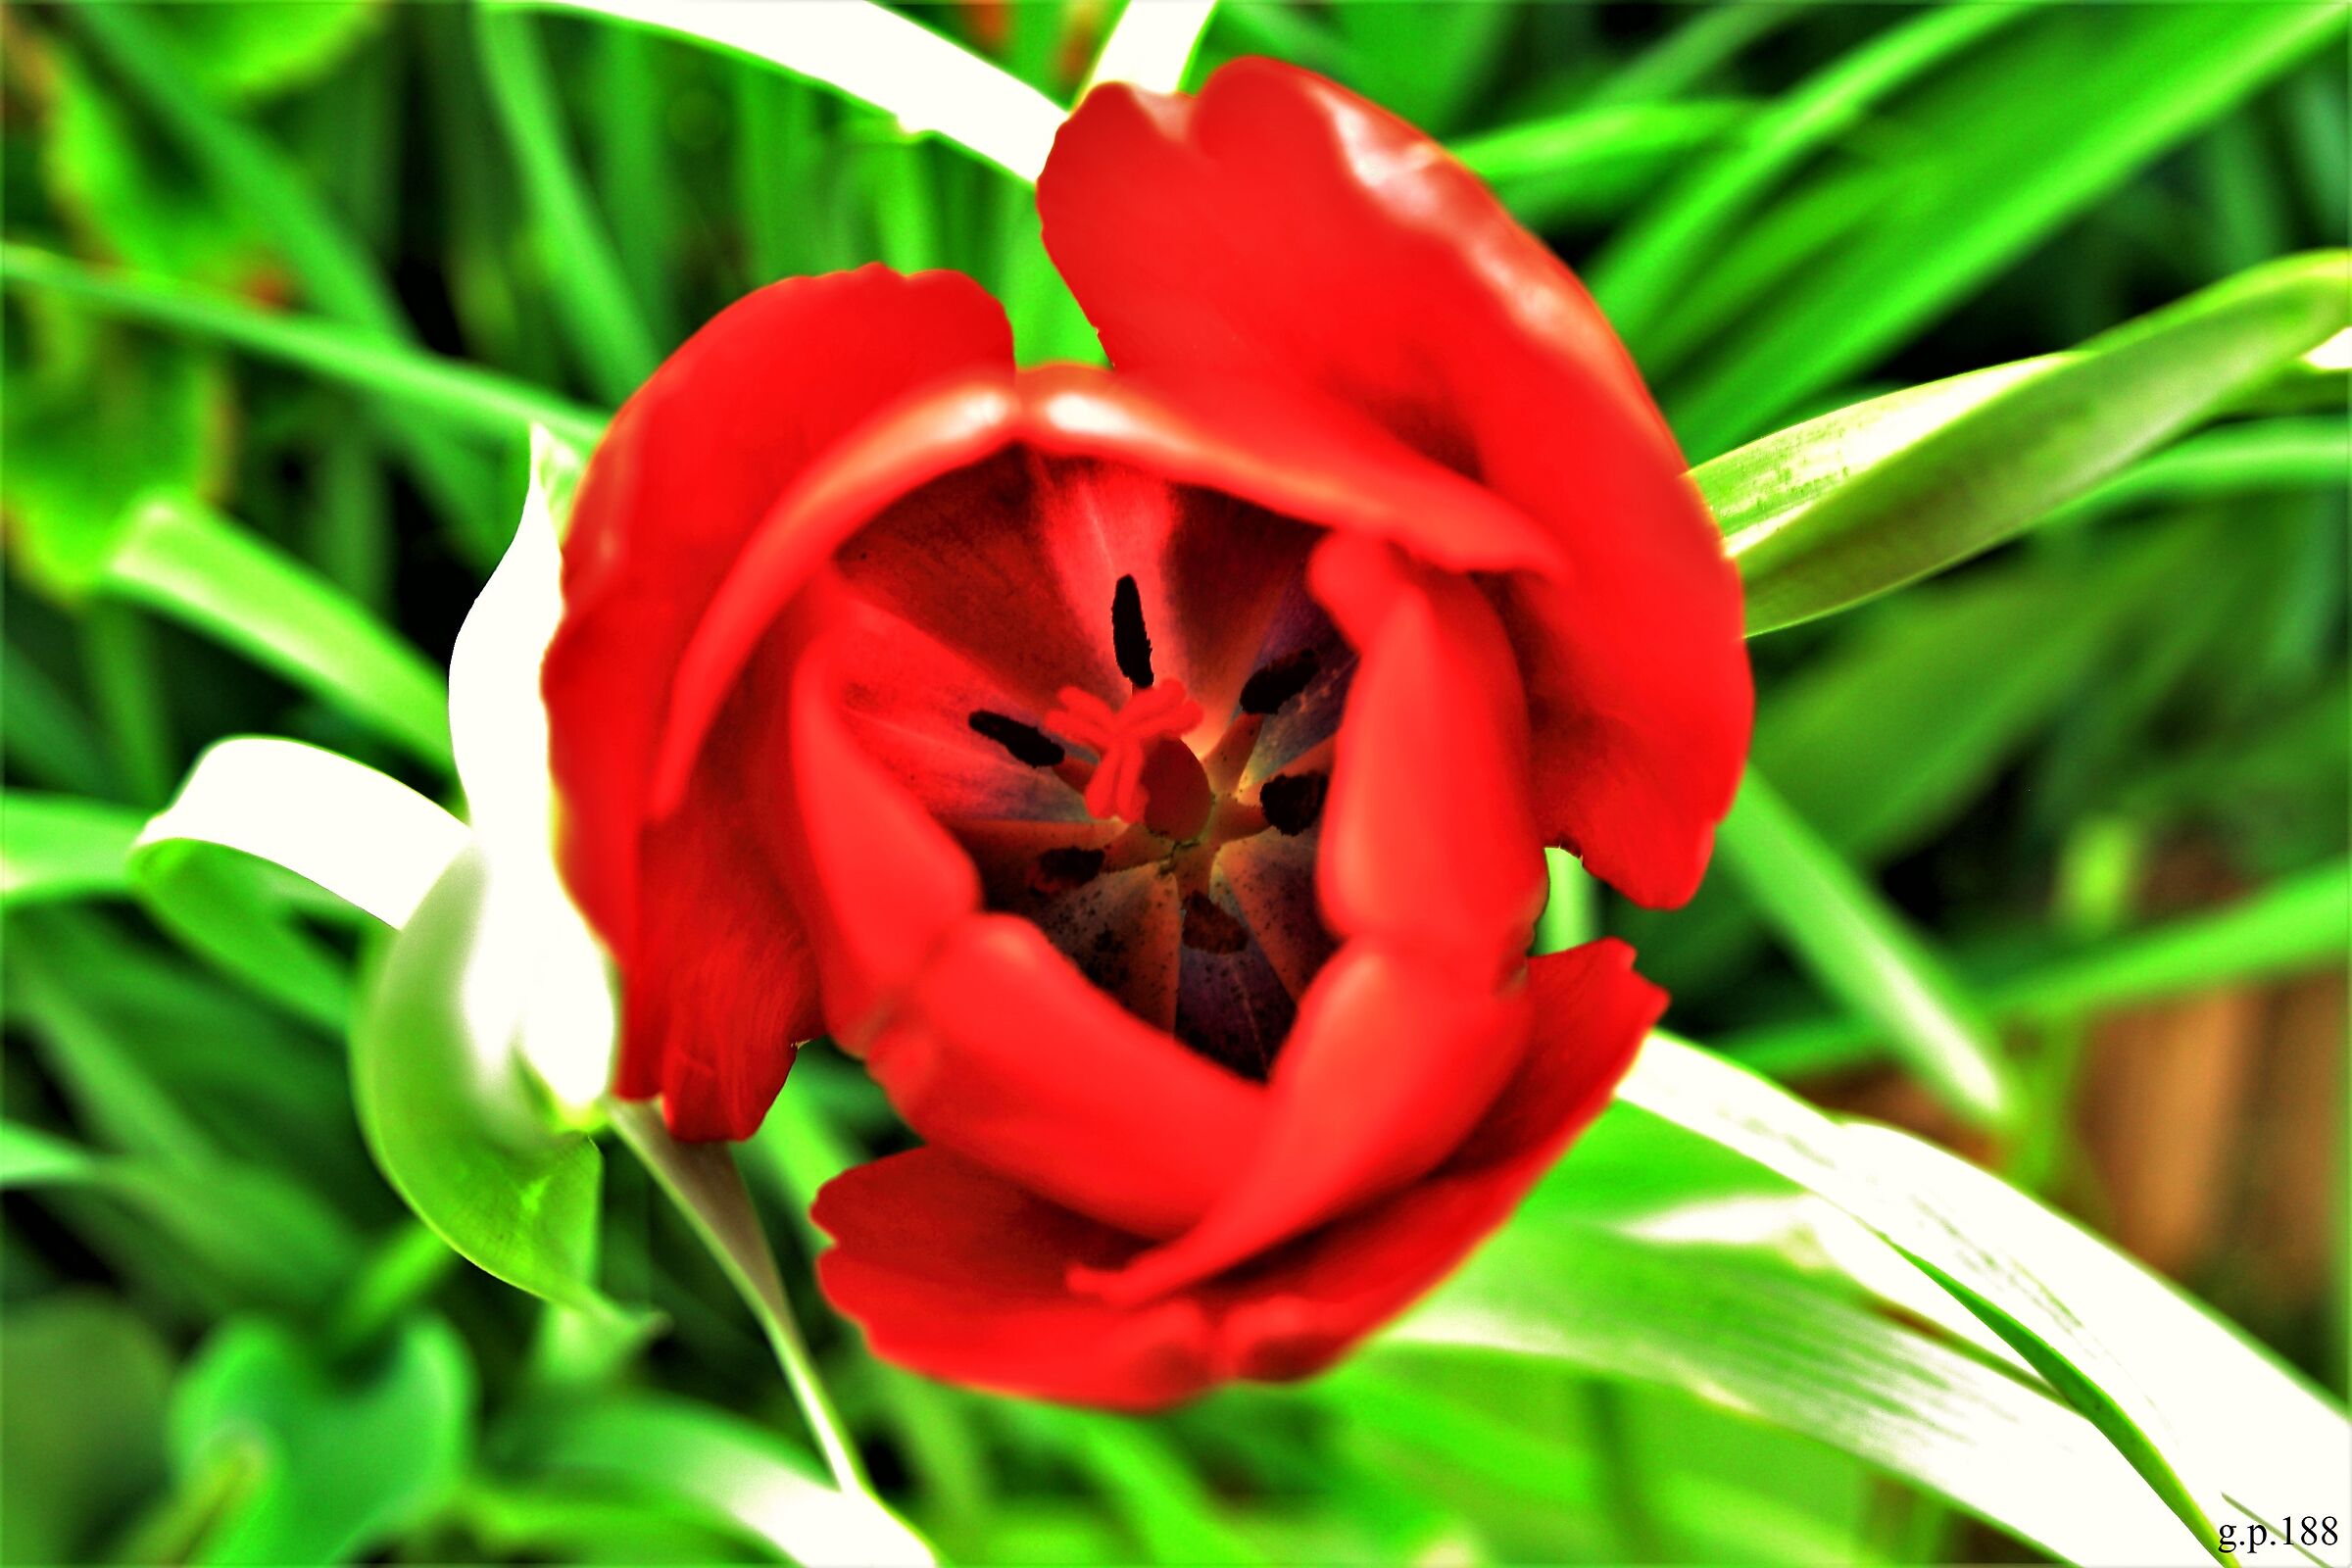 Inside a Tulip...